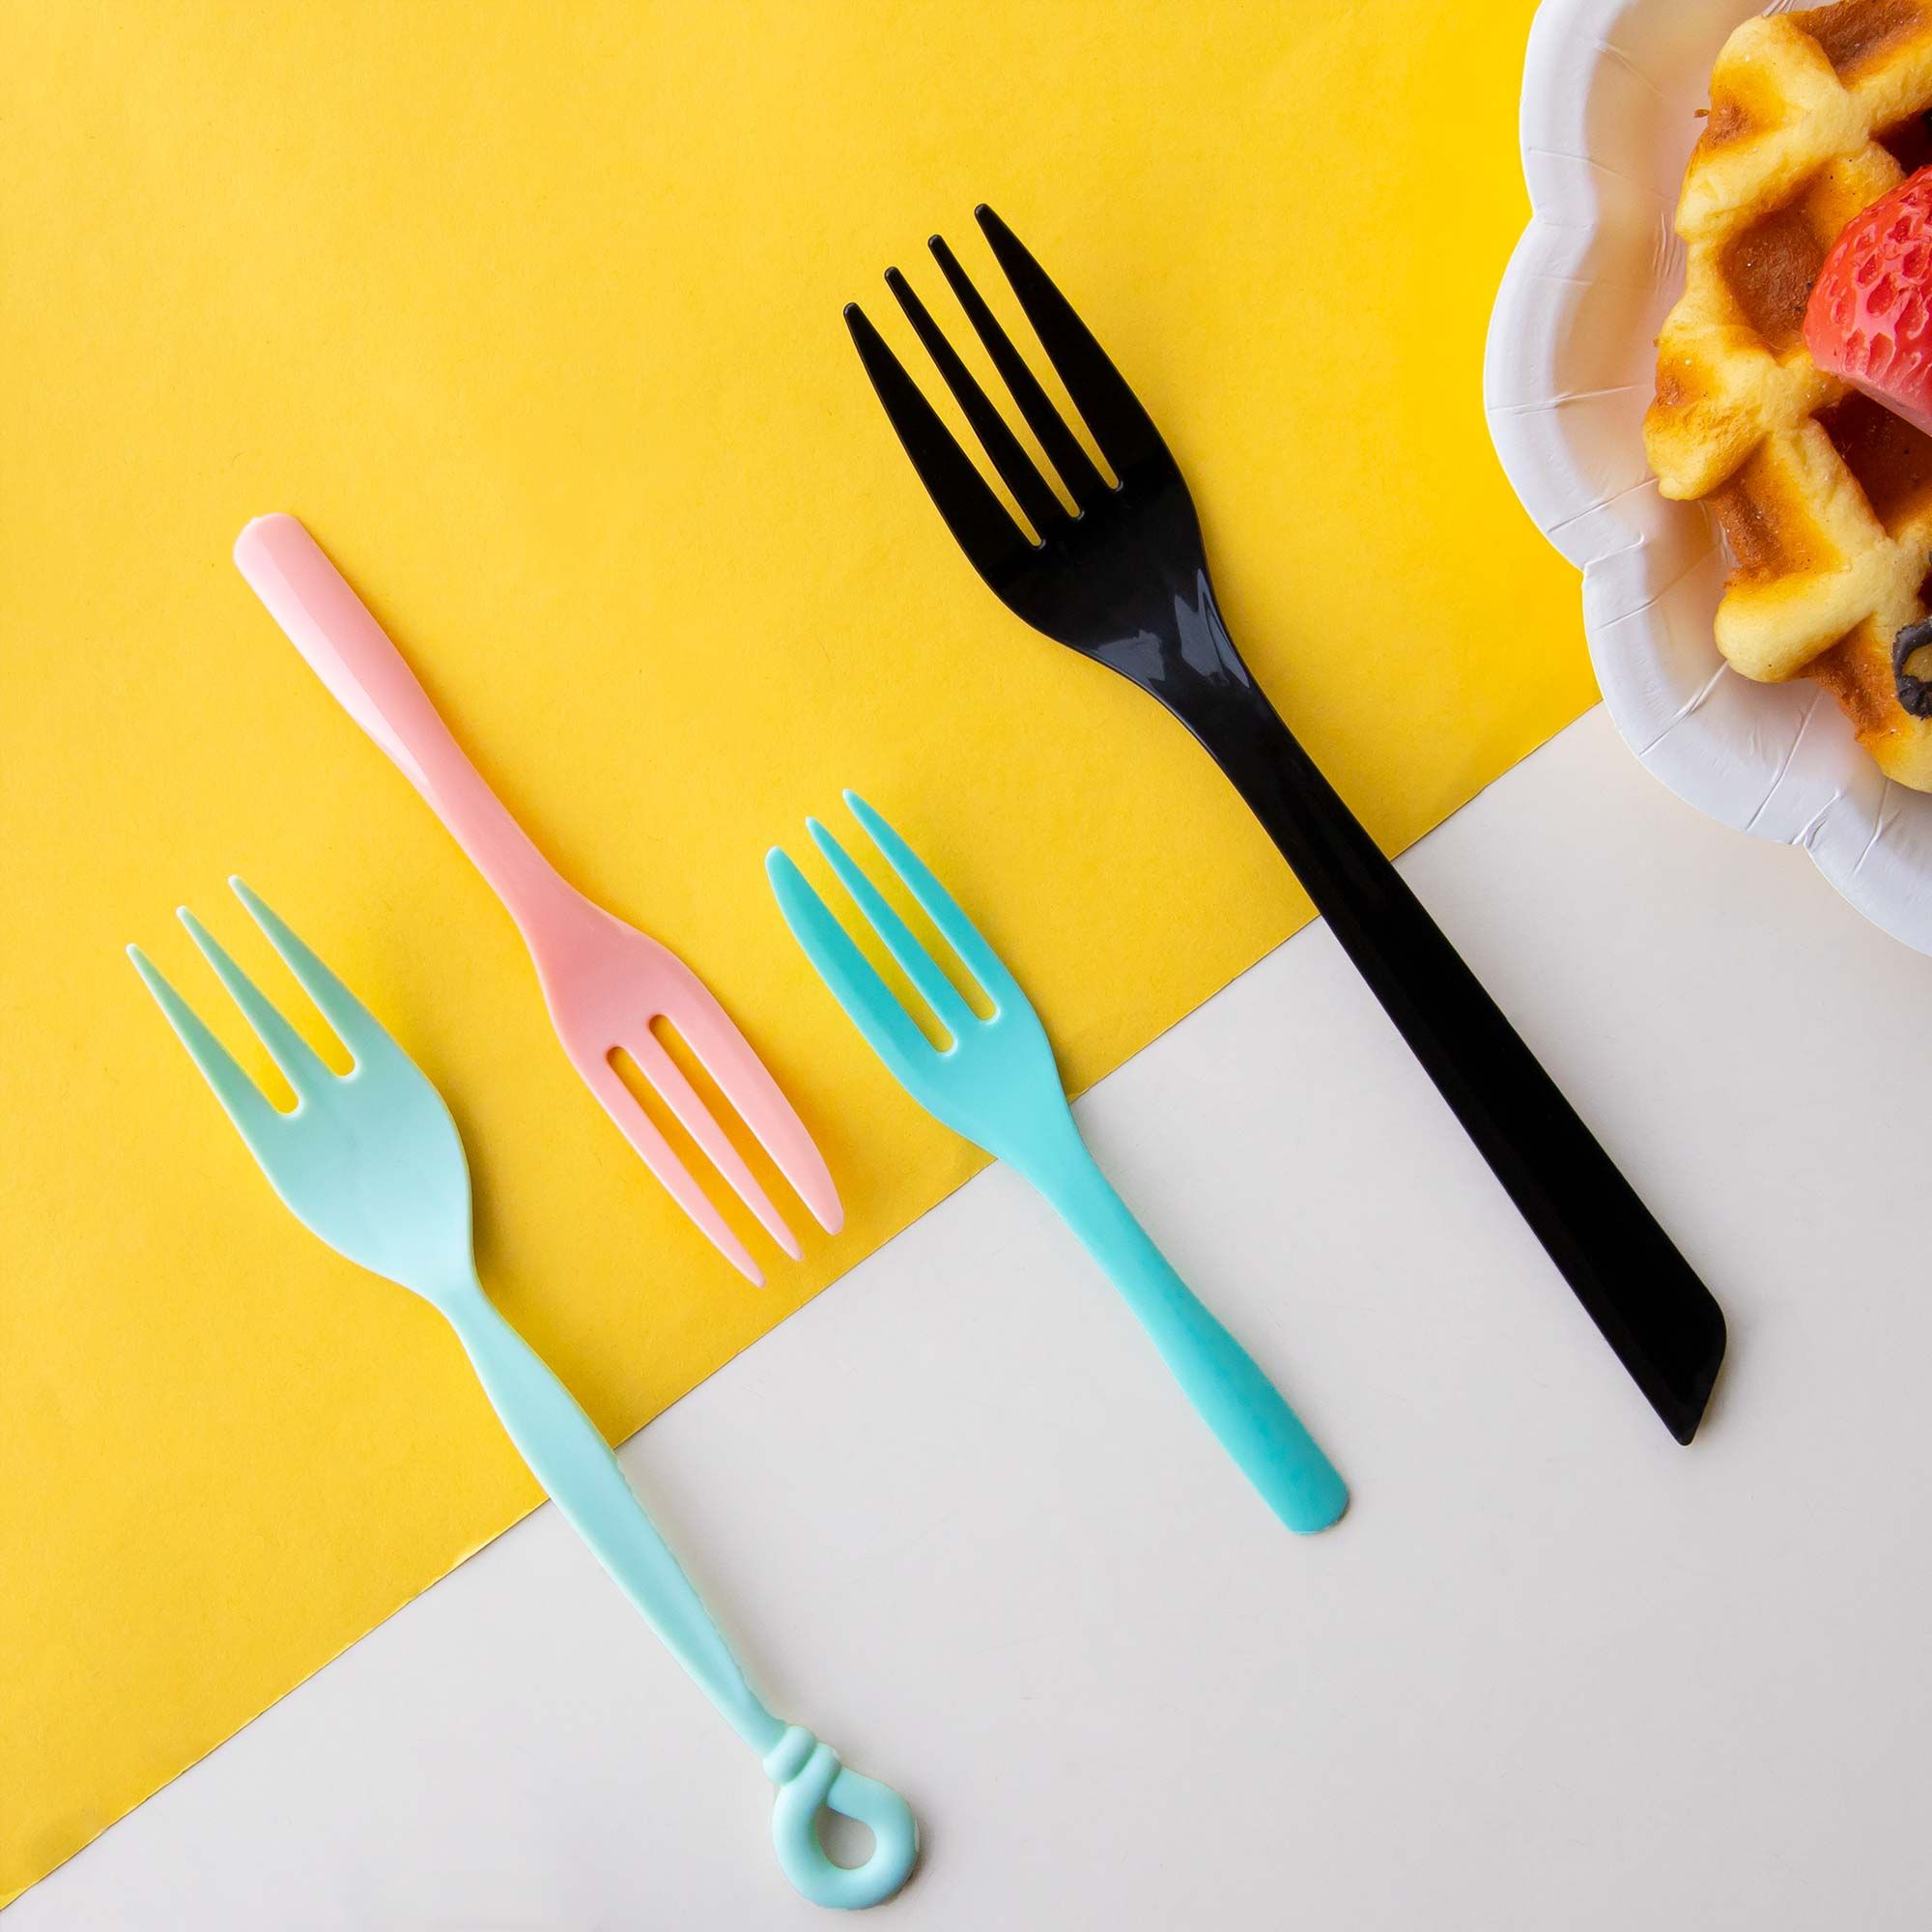 Tenedor de Plástico - Tenedores desechables, tenedores coloridos, Diseño  de cubiertos de plástico personalizados y fabricación de vajilla de  plástico